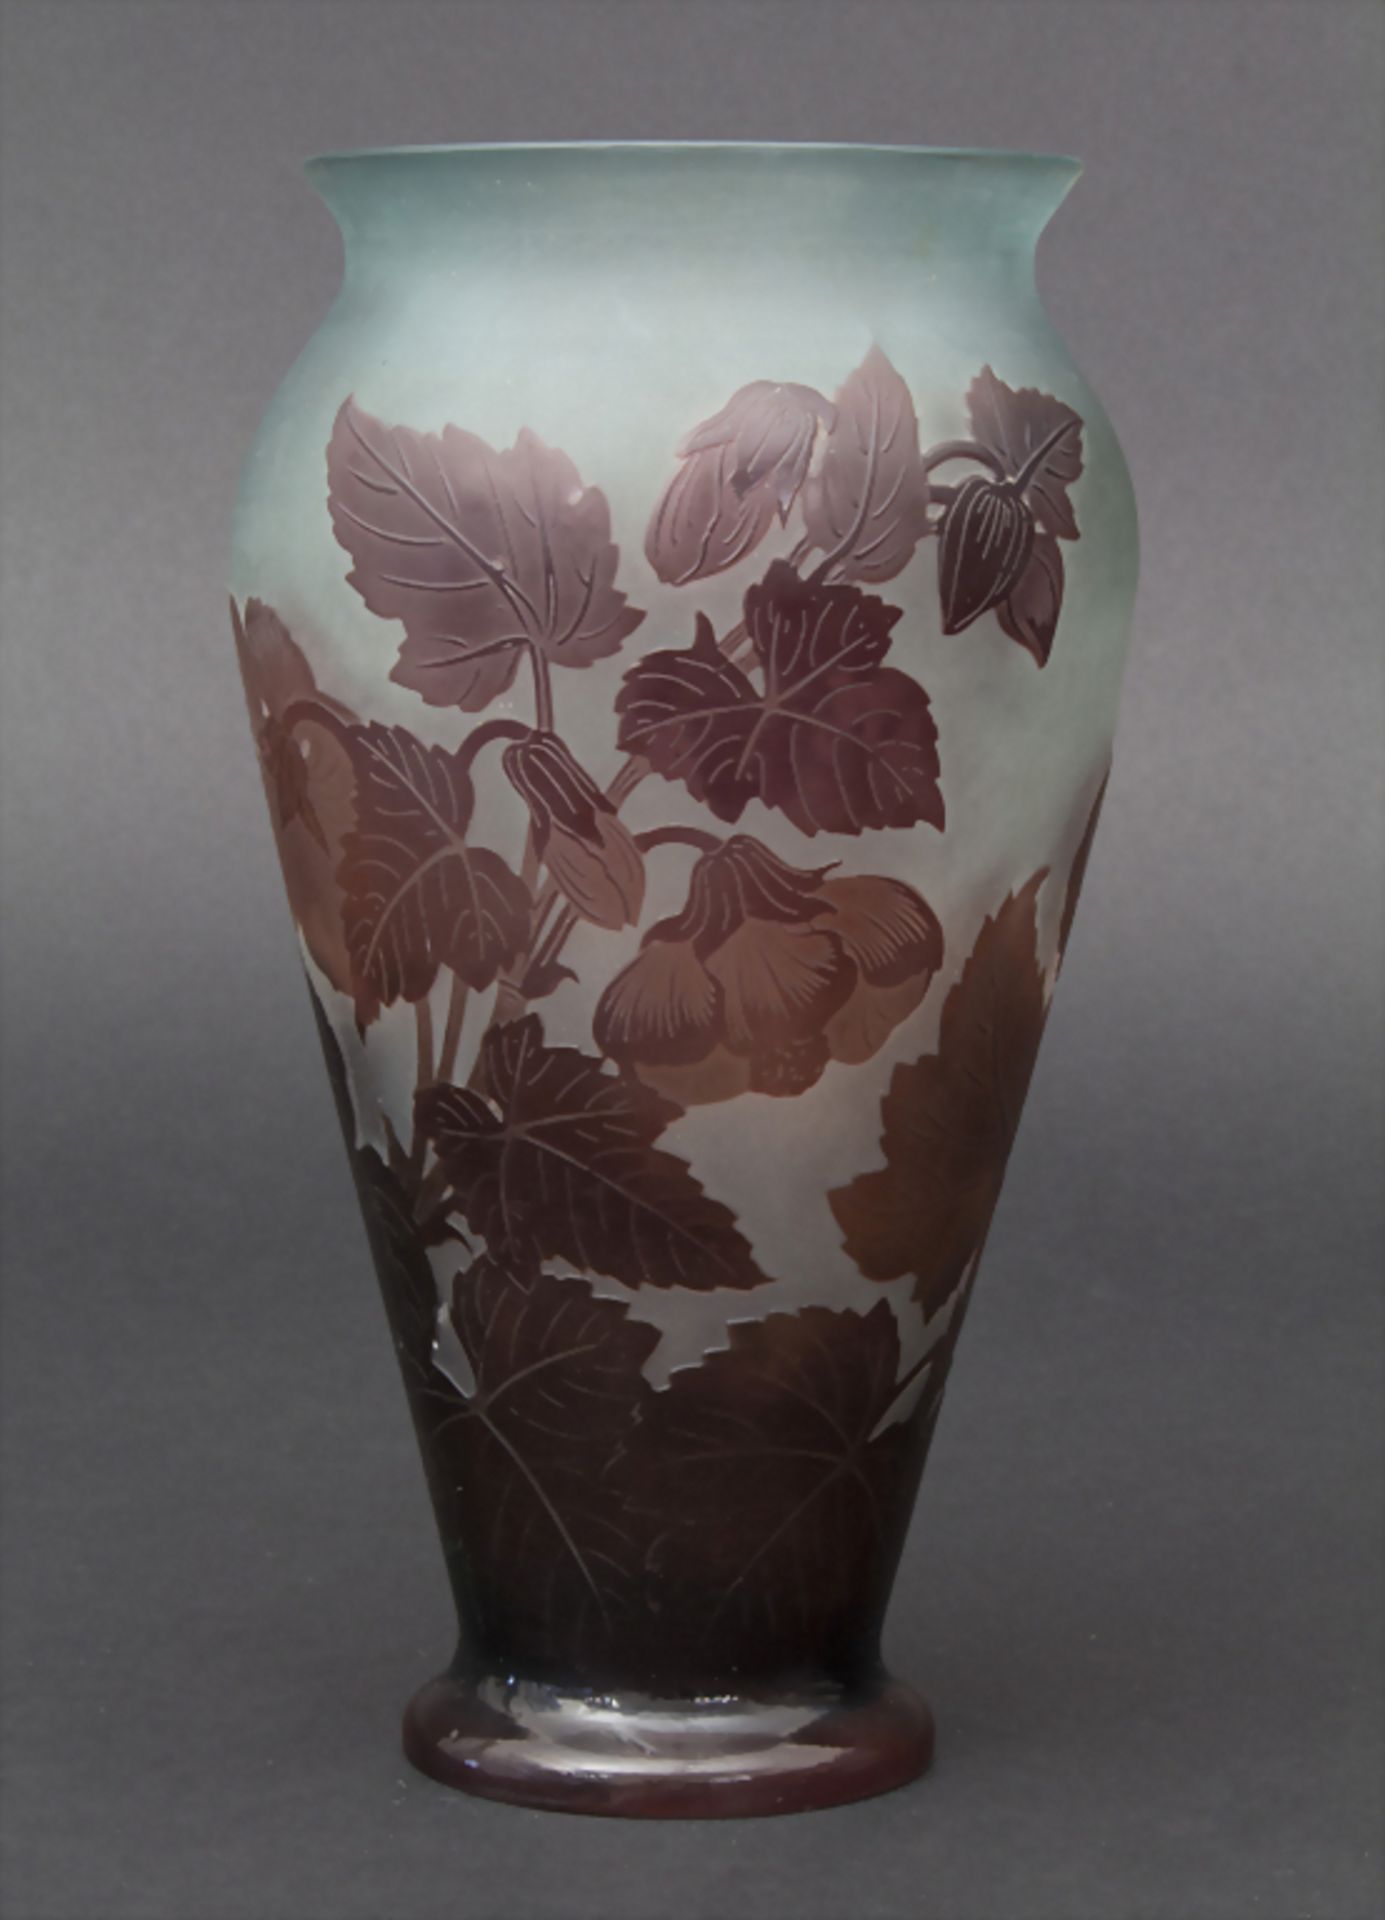 Jugendstil Vase mit Malve (Mauve) / An Art Nouveau vase with mallow, Emile Gallé, Ecole de Nanc